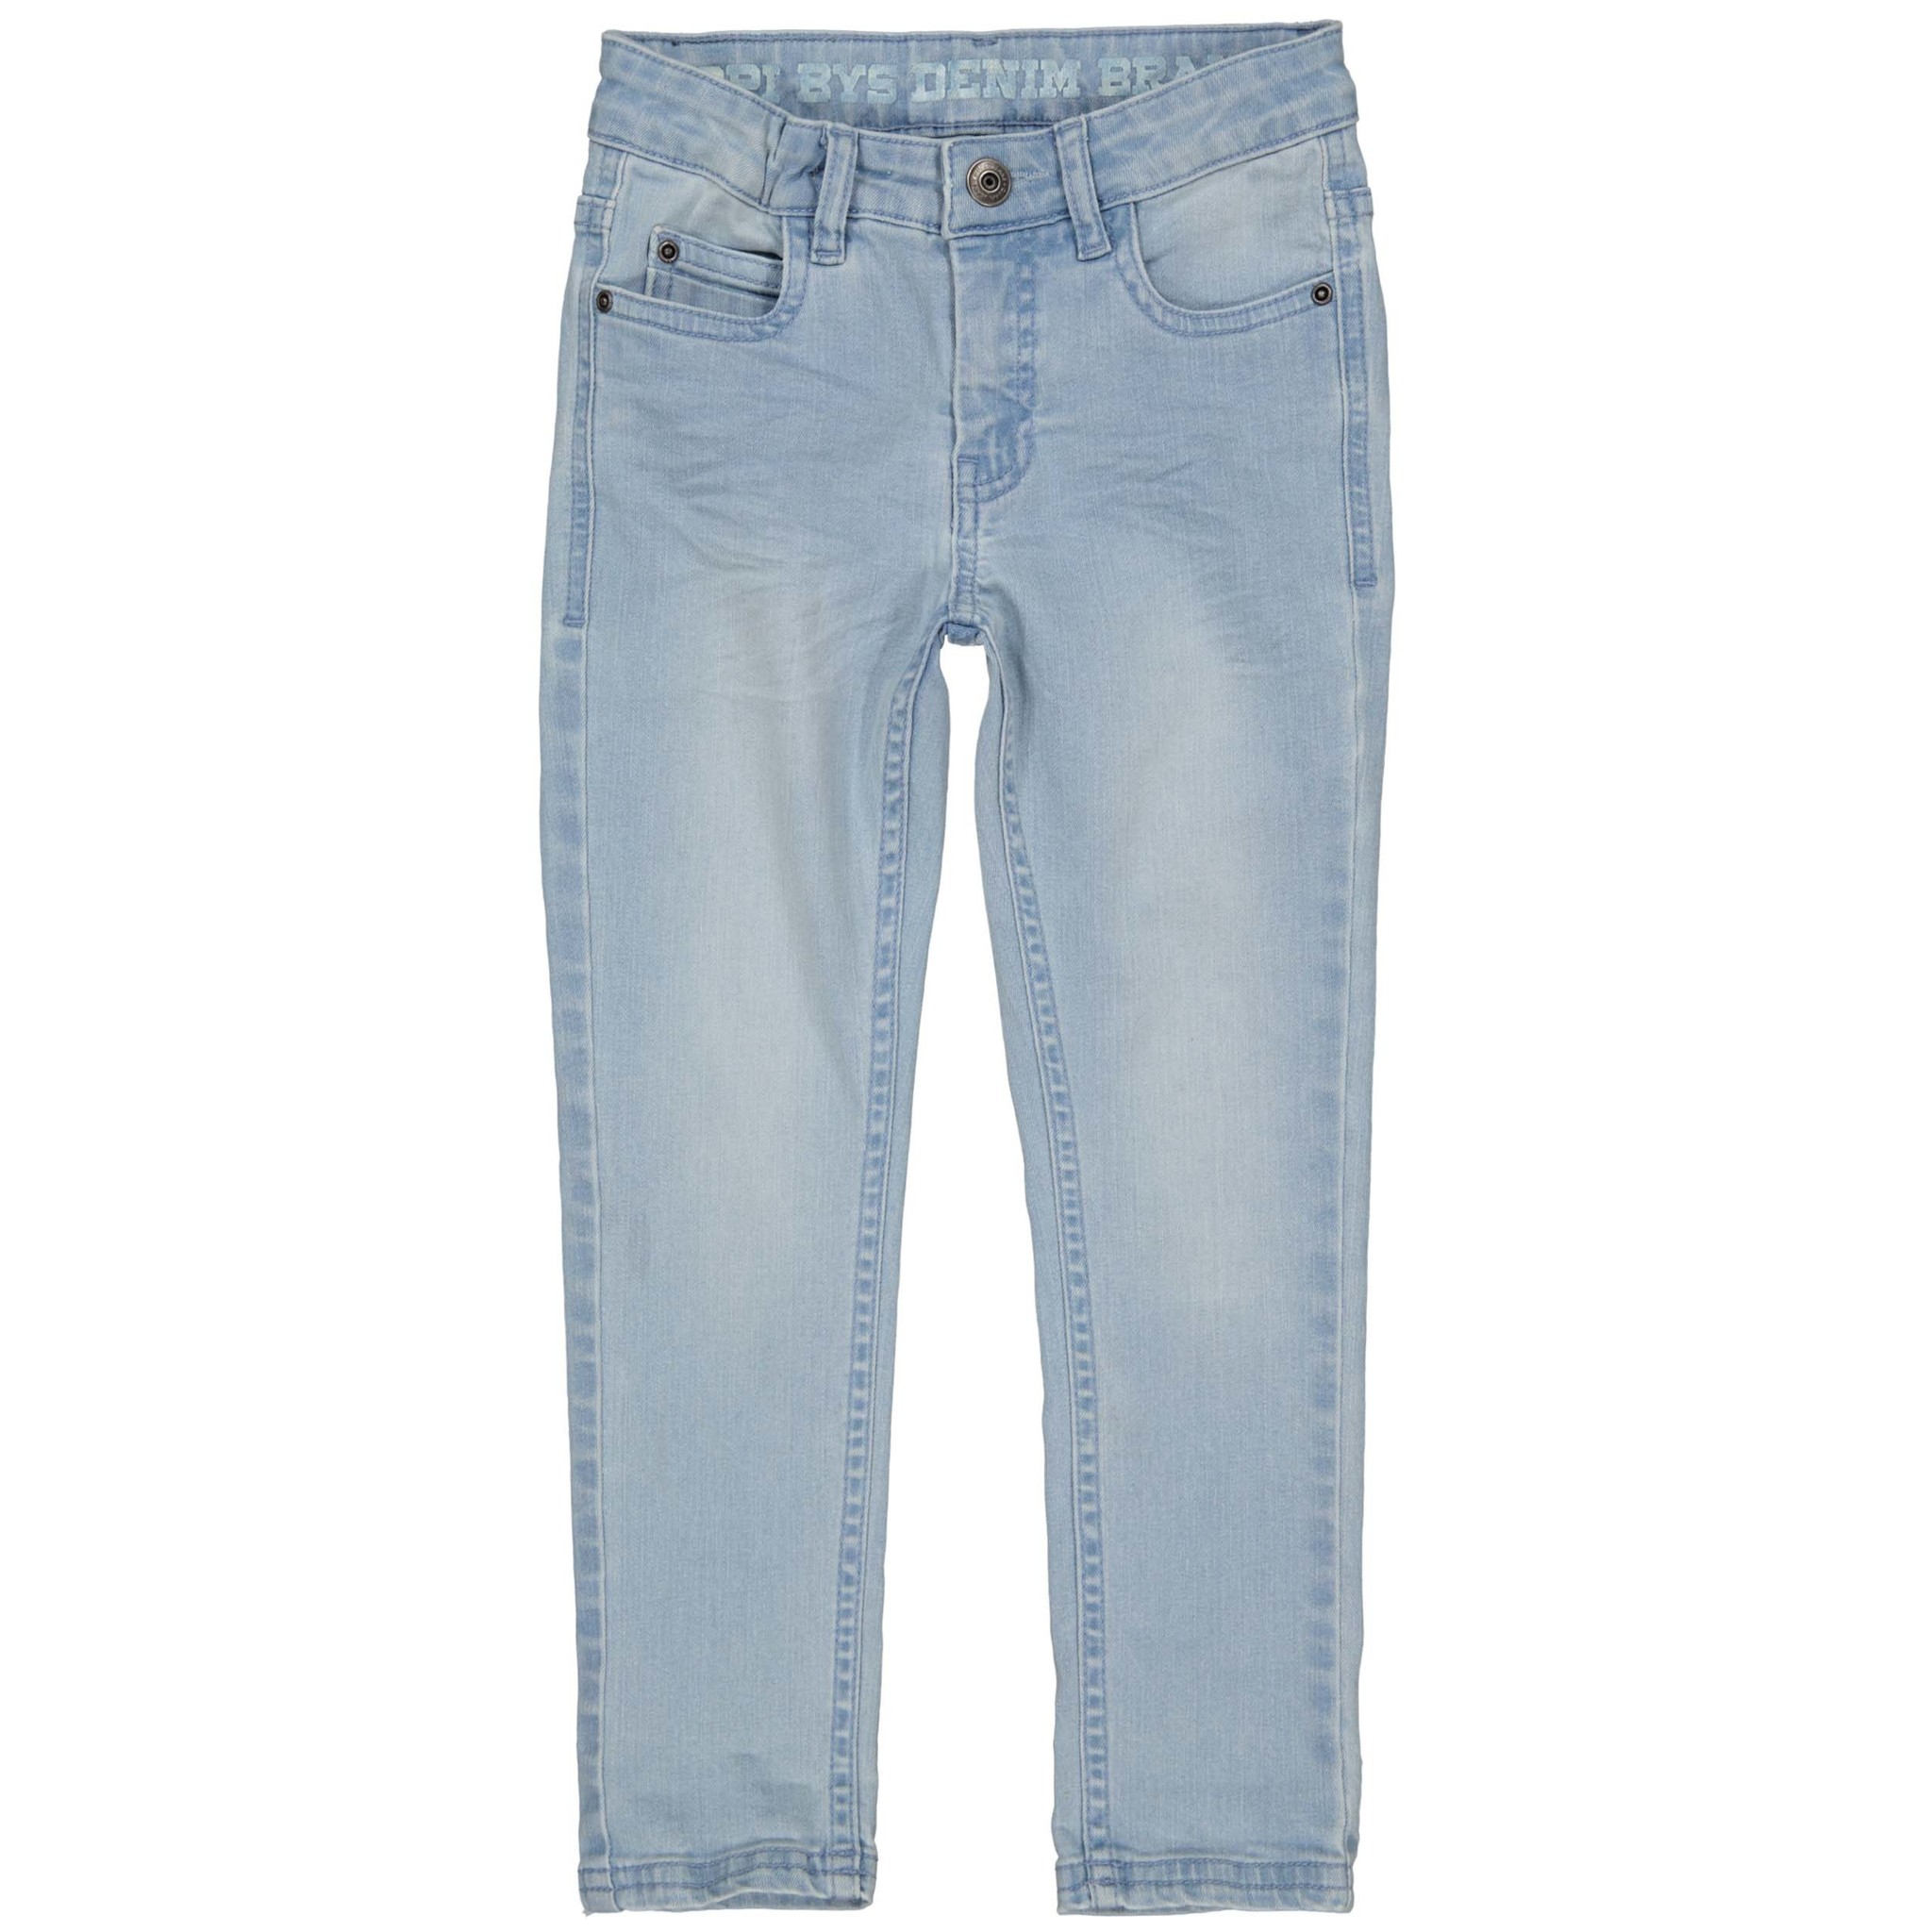 Quapi Jongens jeans broek - Jake - Licht blauw denim